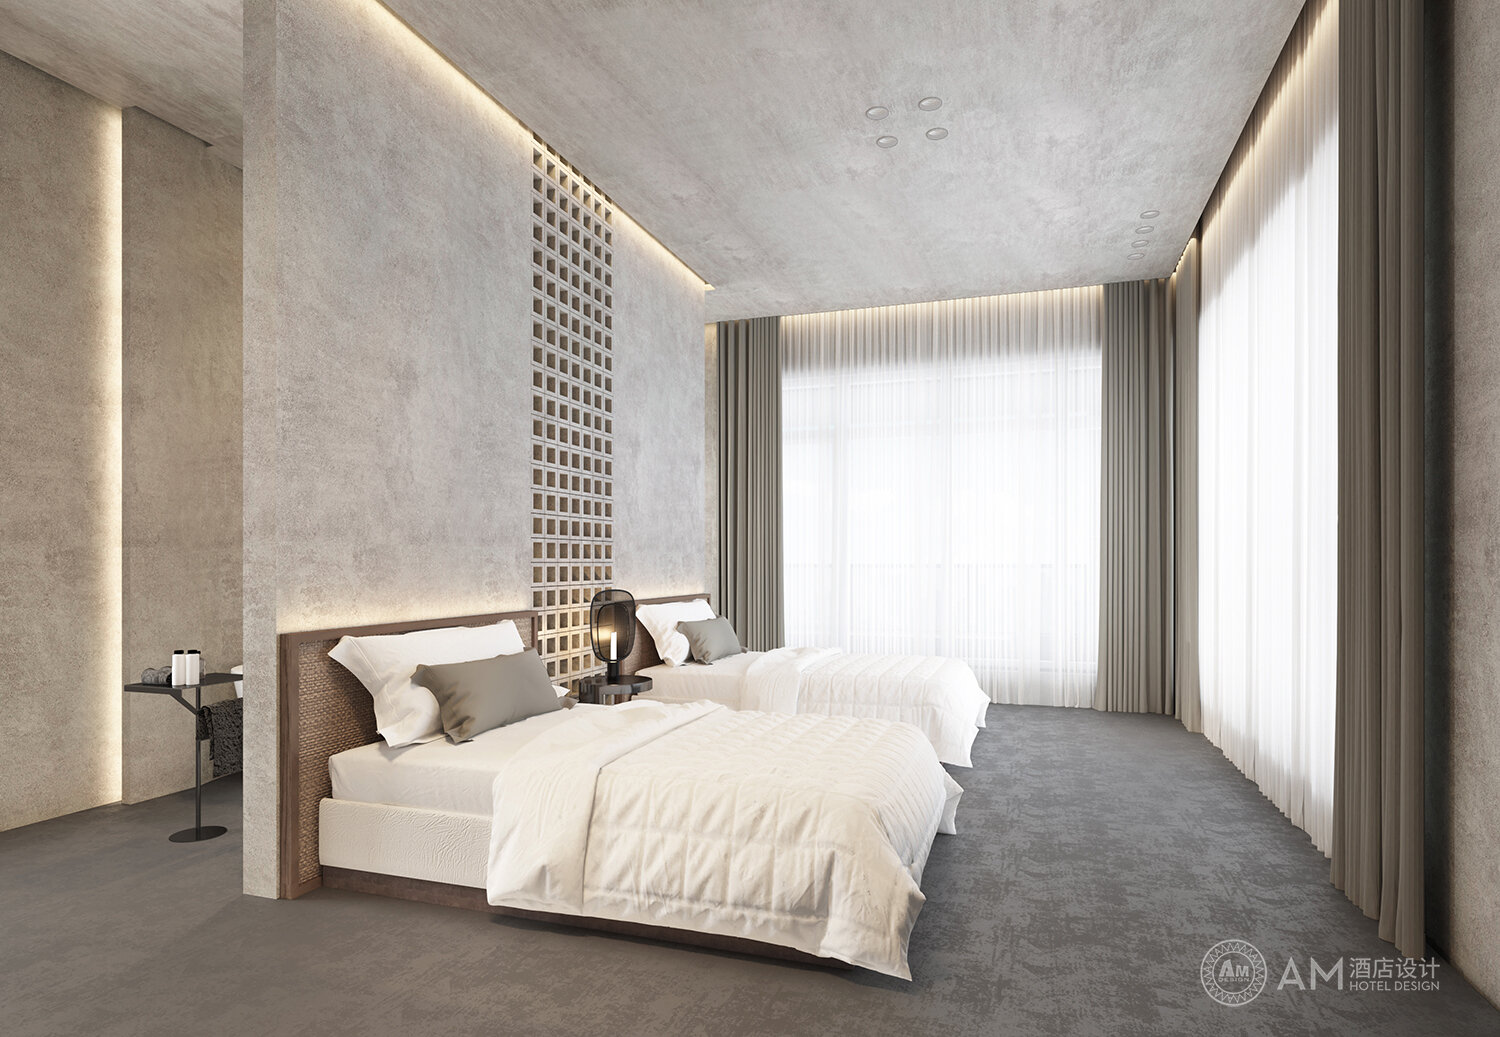 AM DESIGN | Guest room design of Qianhouyuan B&B in Jizhou District, Tianjin